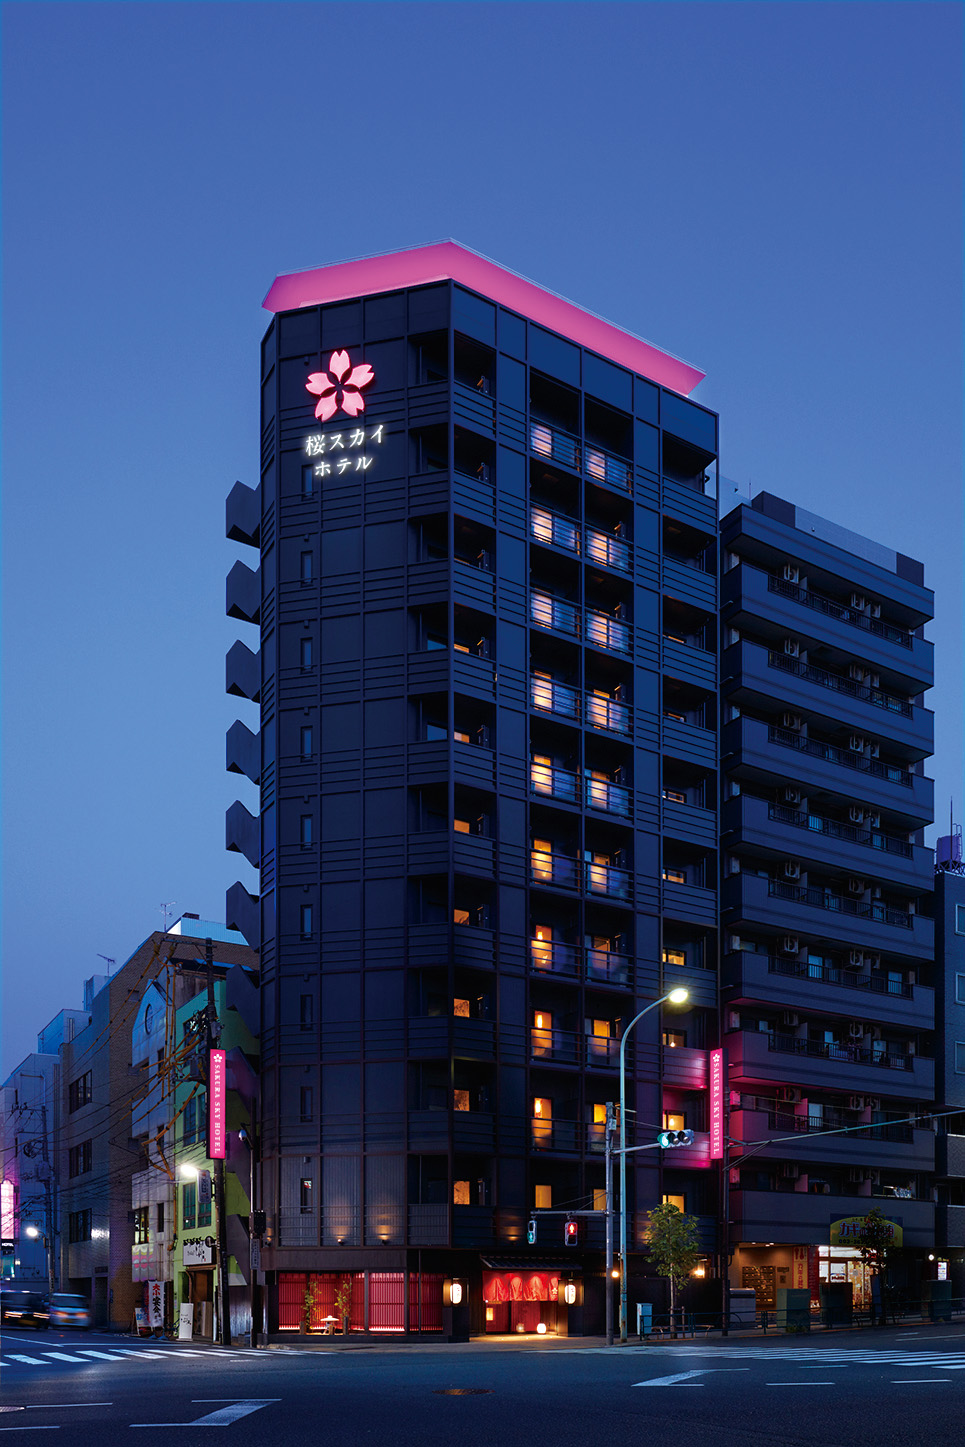 東武ホテルレバント東京 宿泊予約 飛行機付き予約 価格が魅力